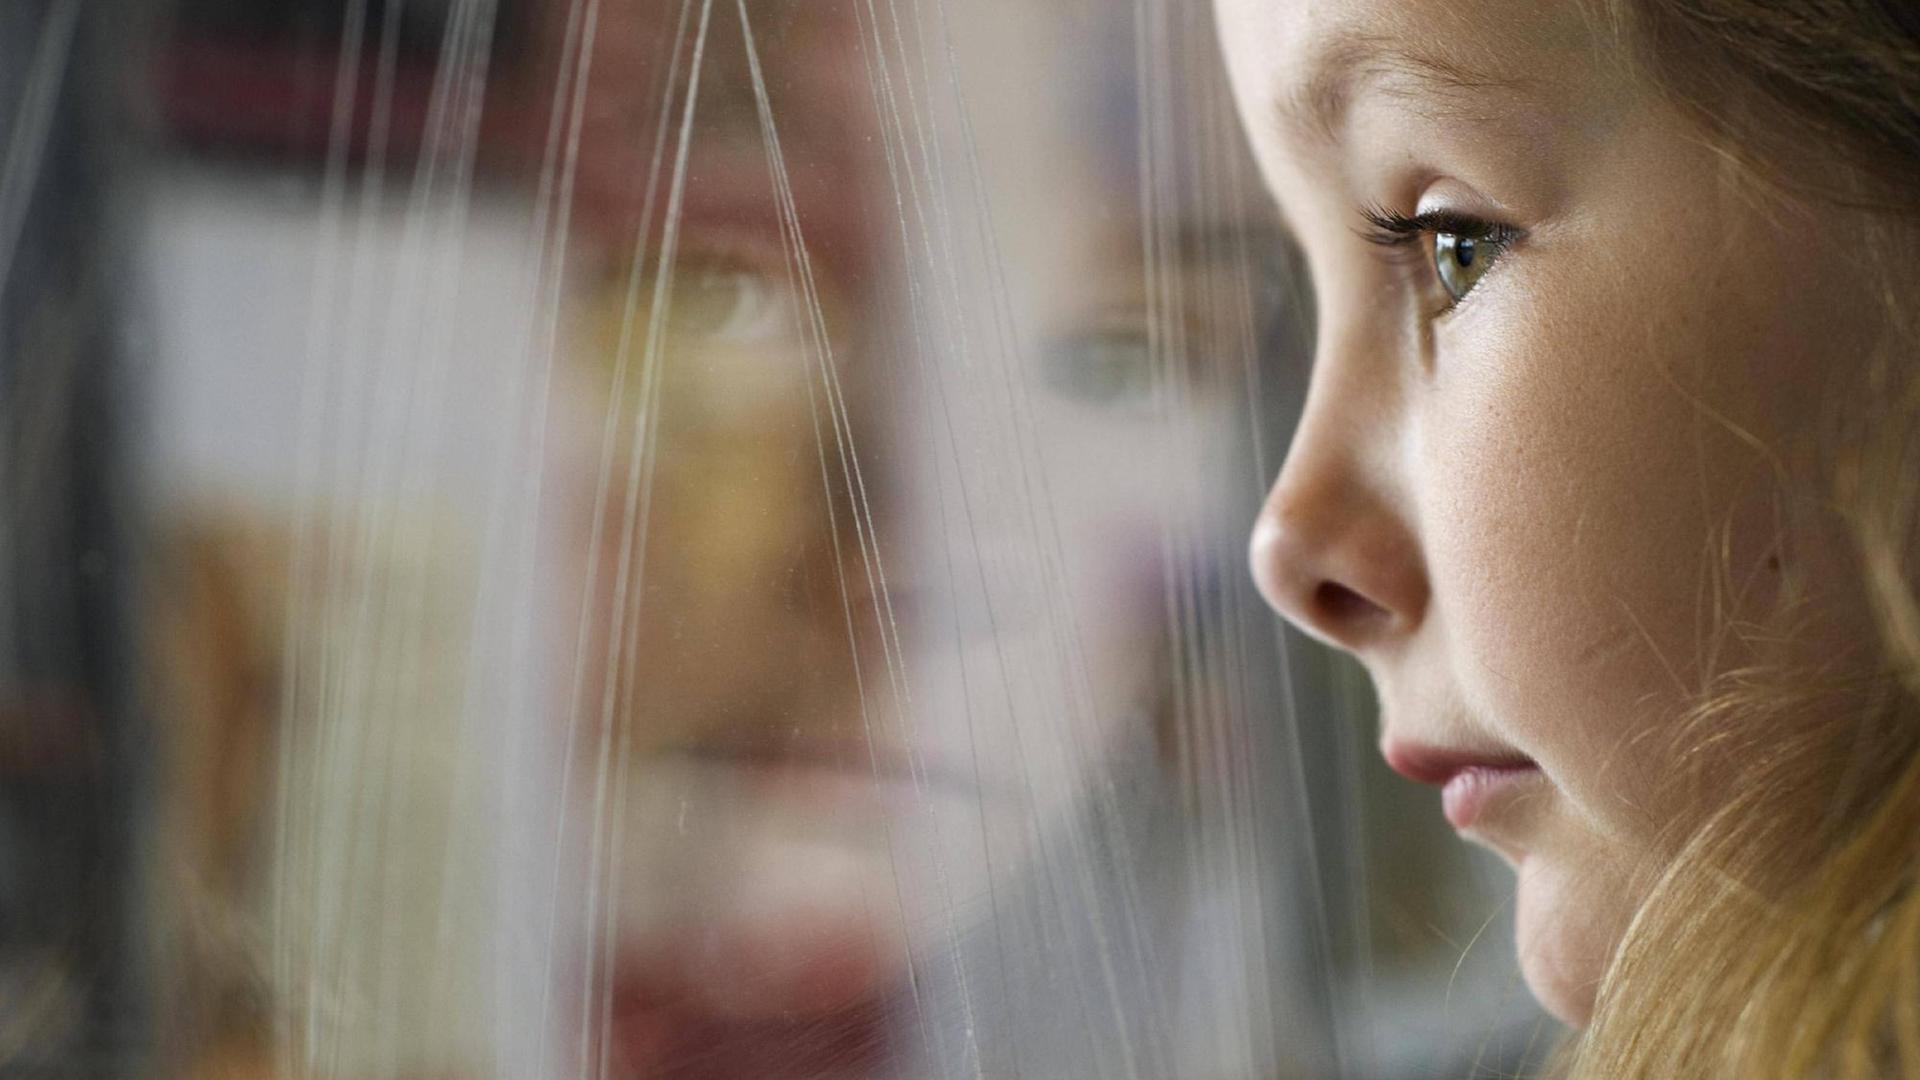 Ein junges Mädchen lehnt sich an die Glasscheibe eines Zugfensters.